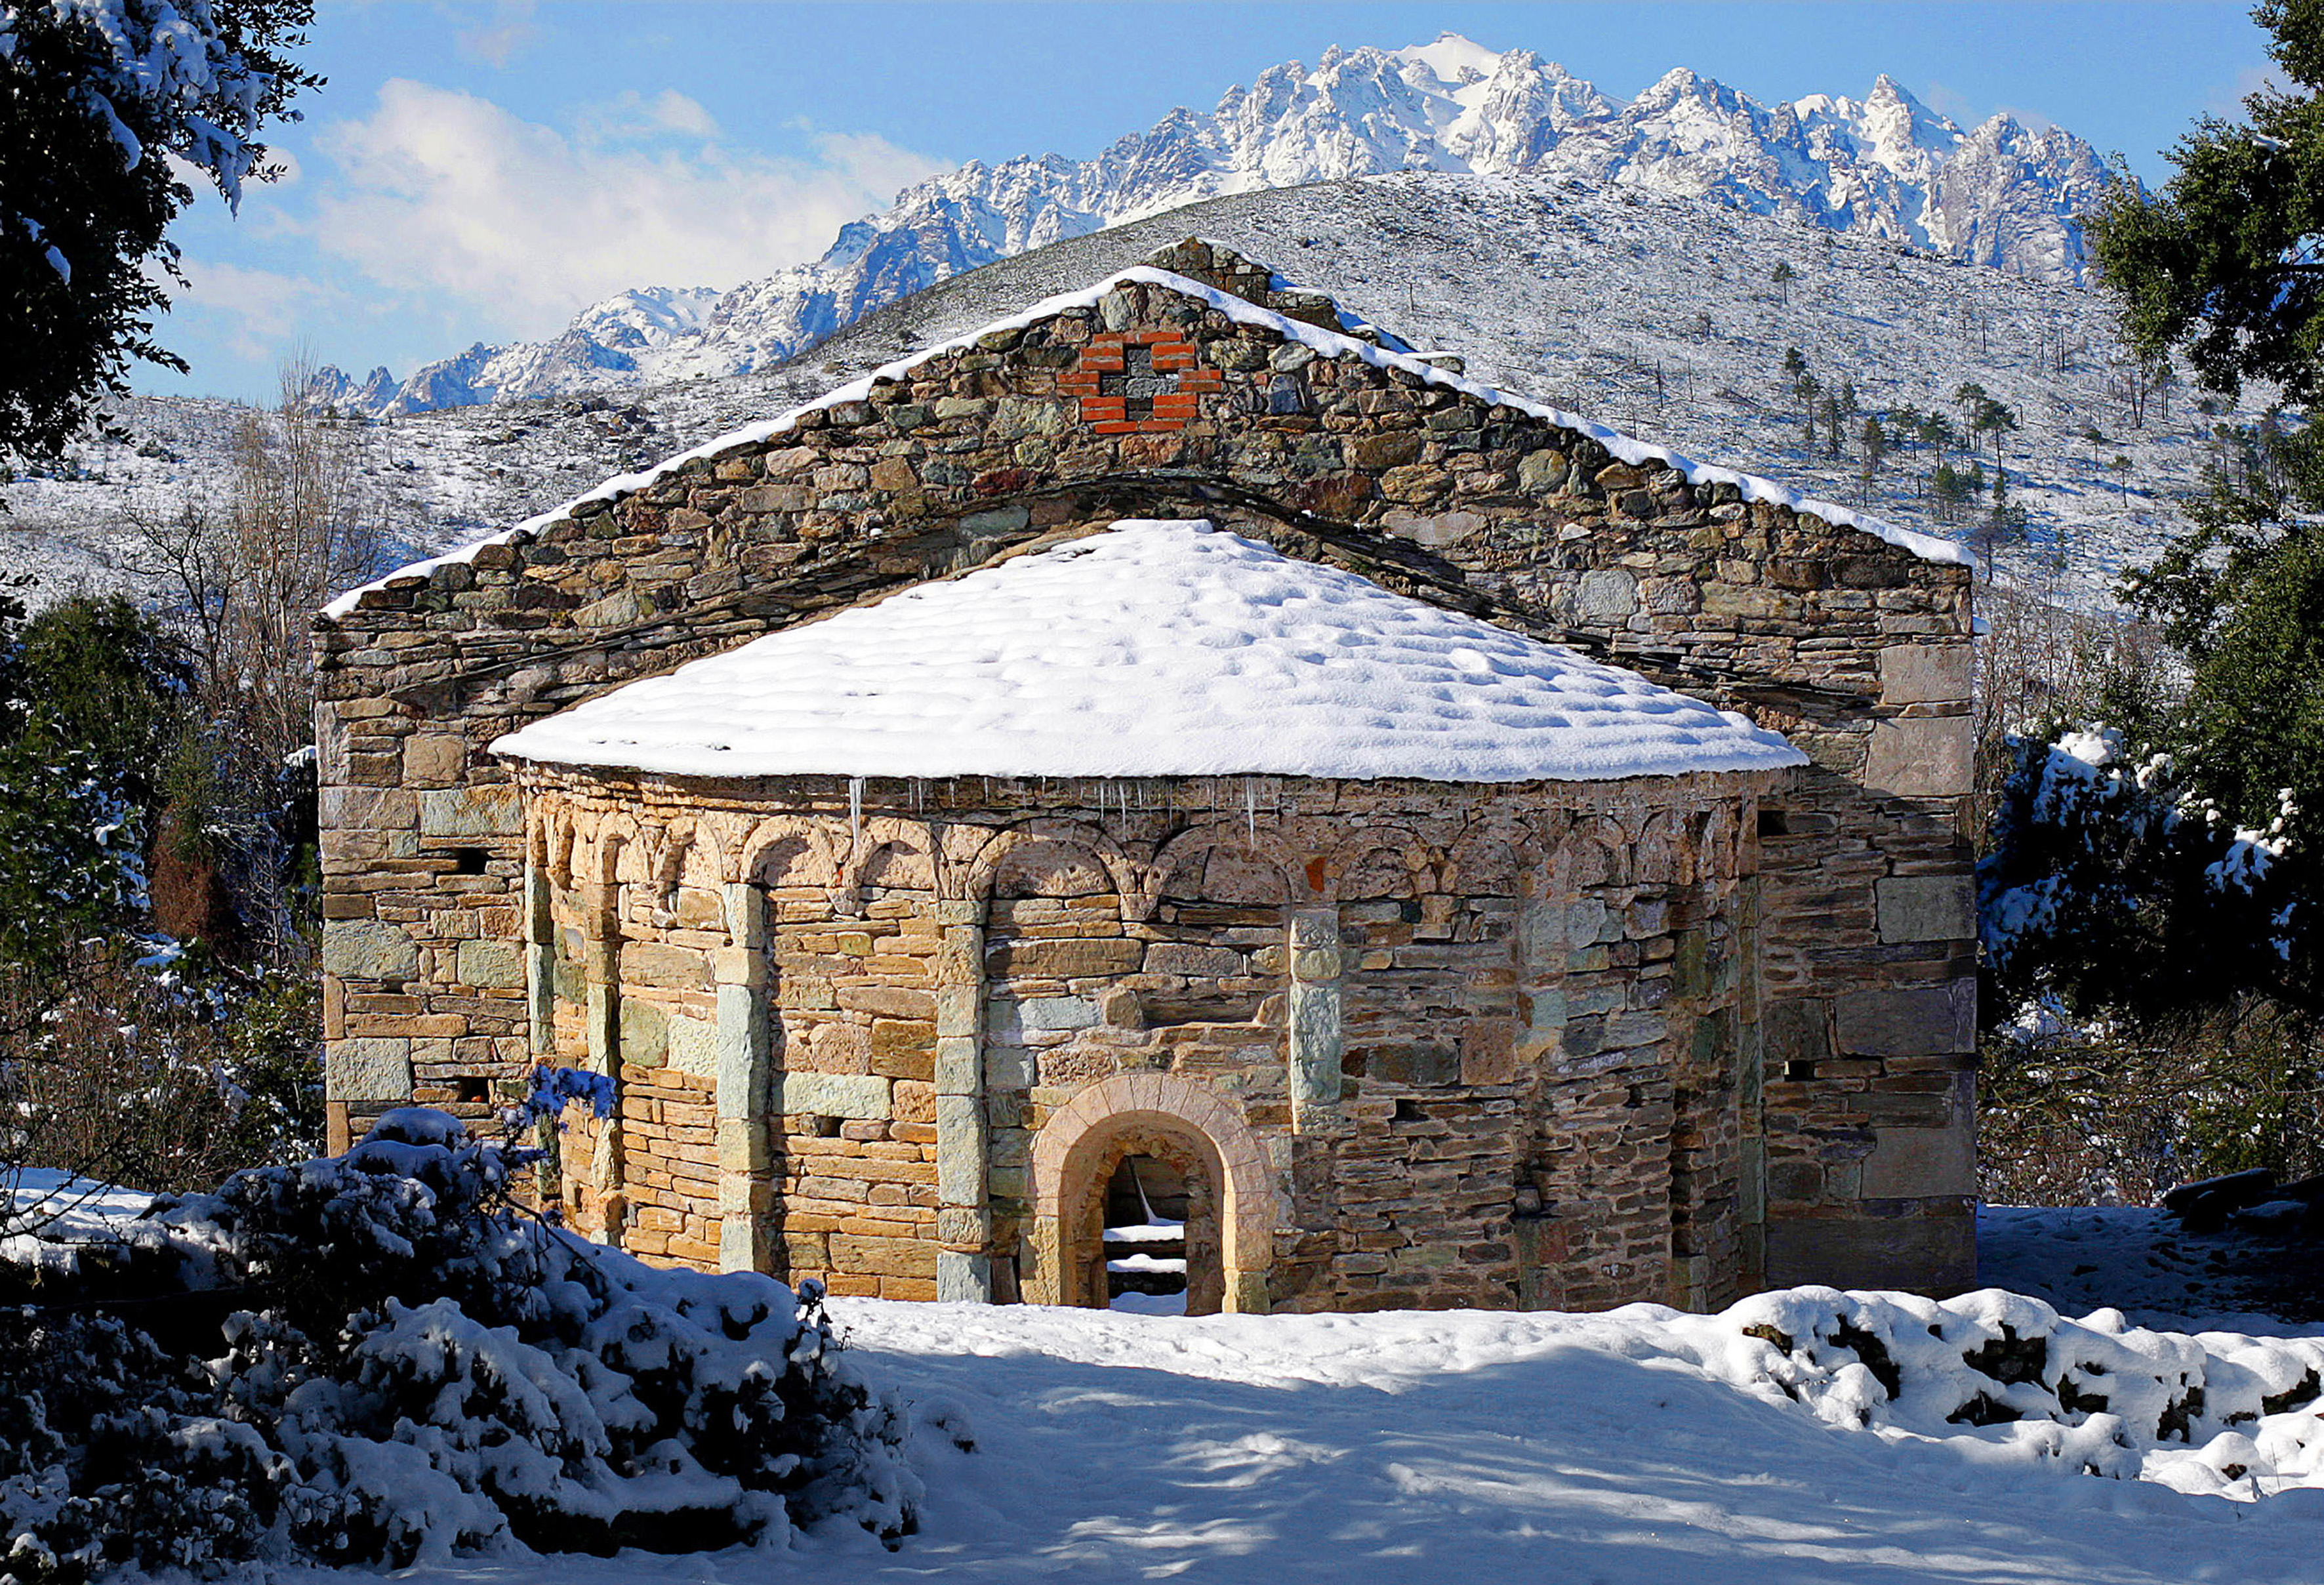 Architecture religieuse médiévale de la vallée du Golo